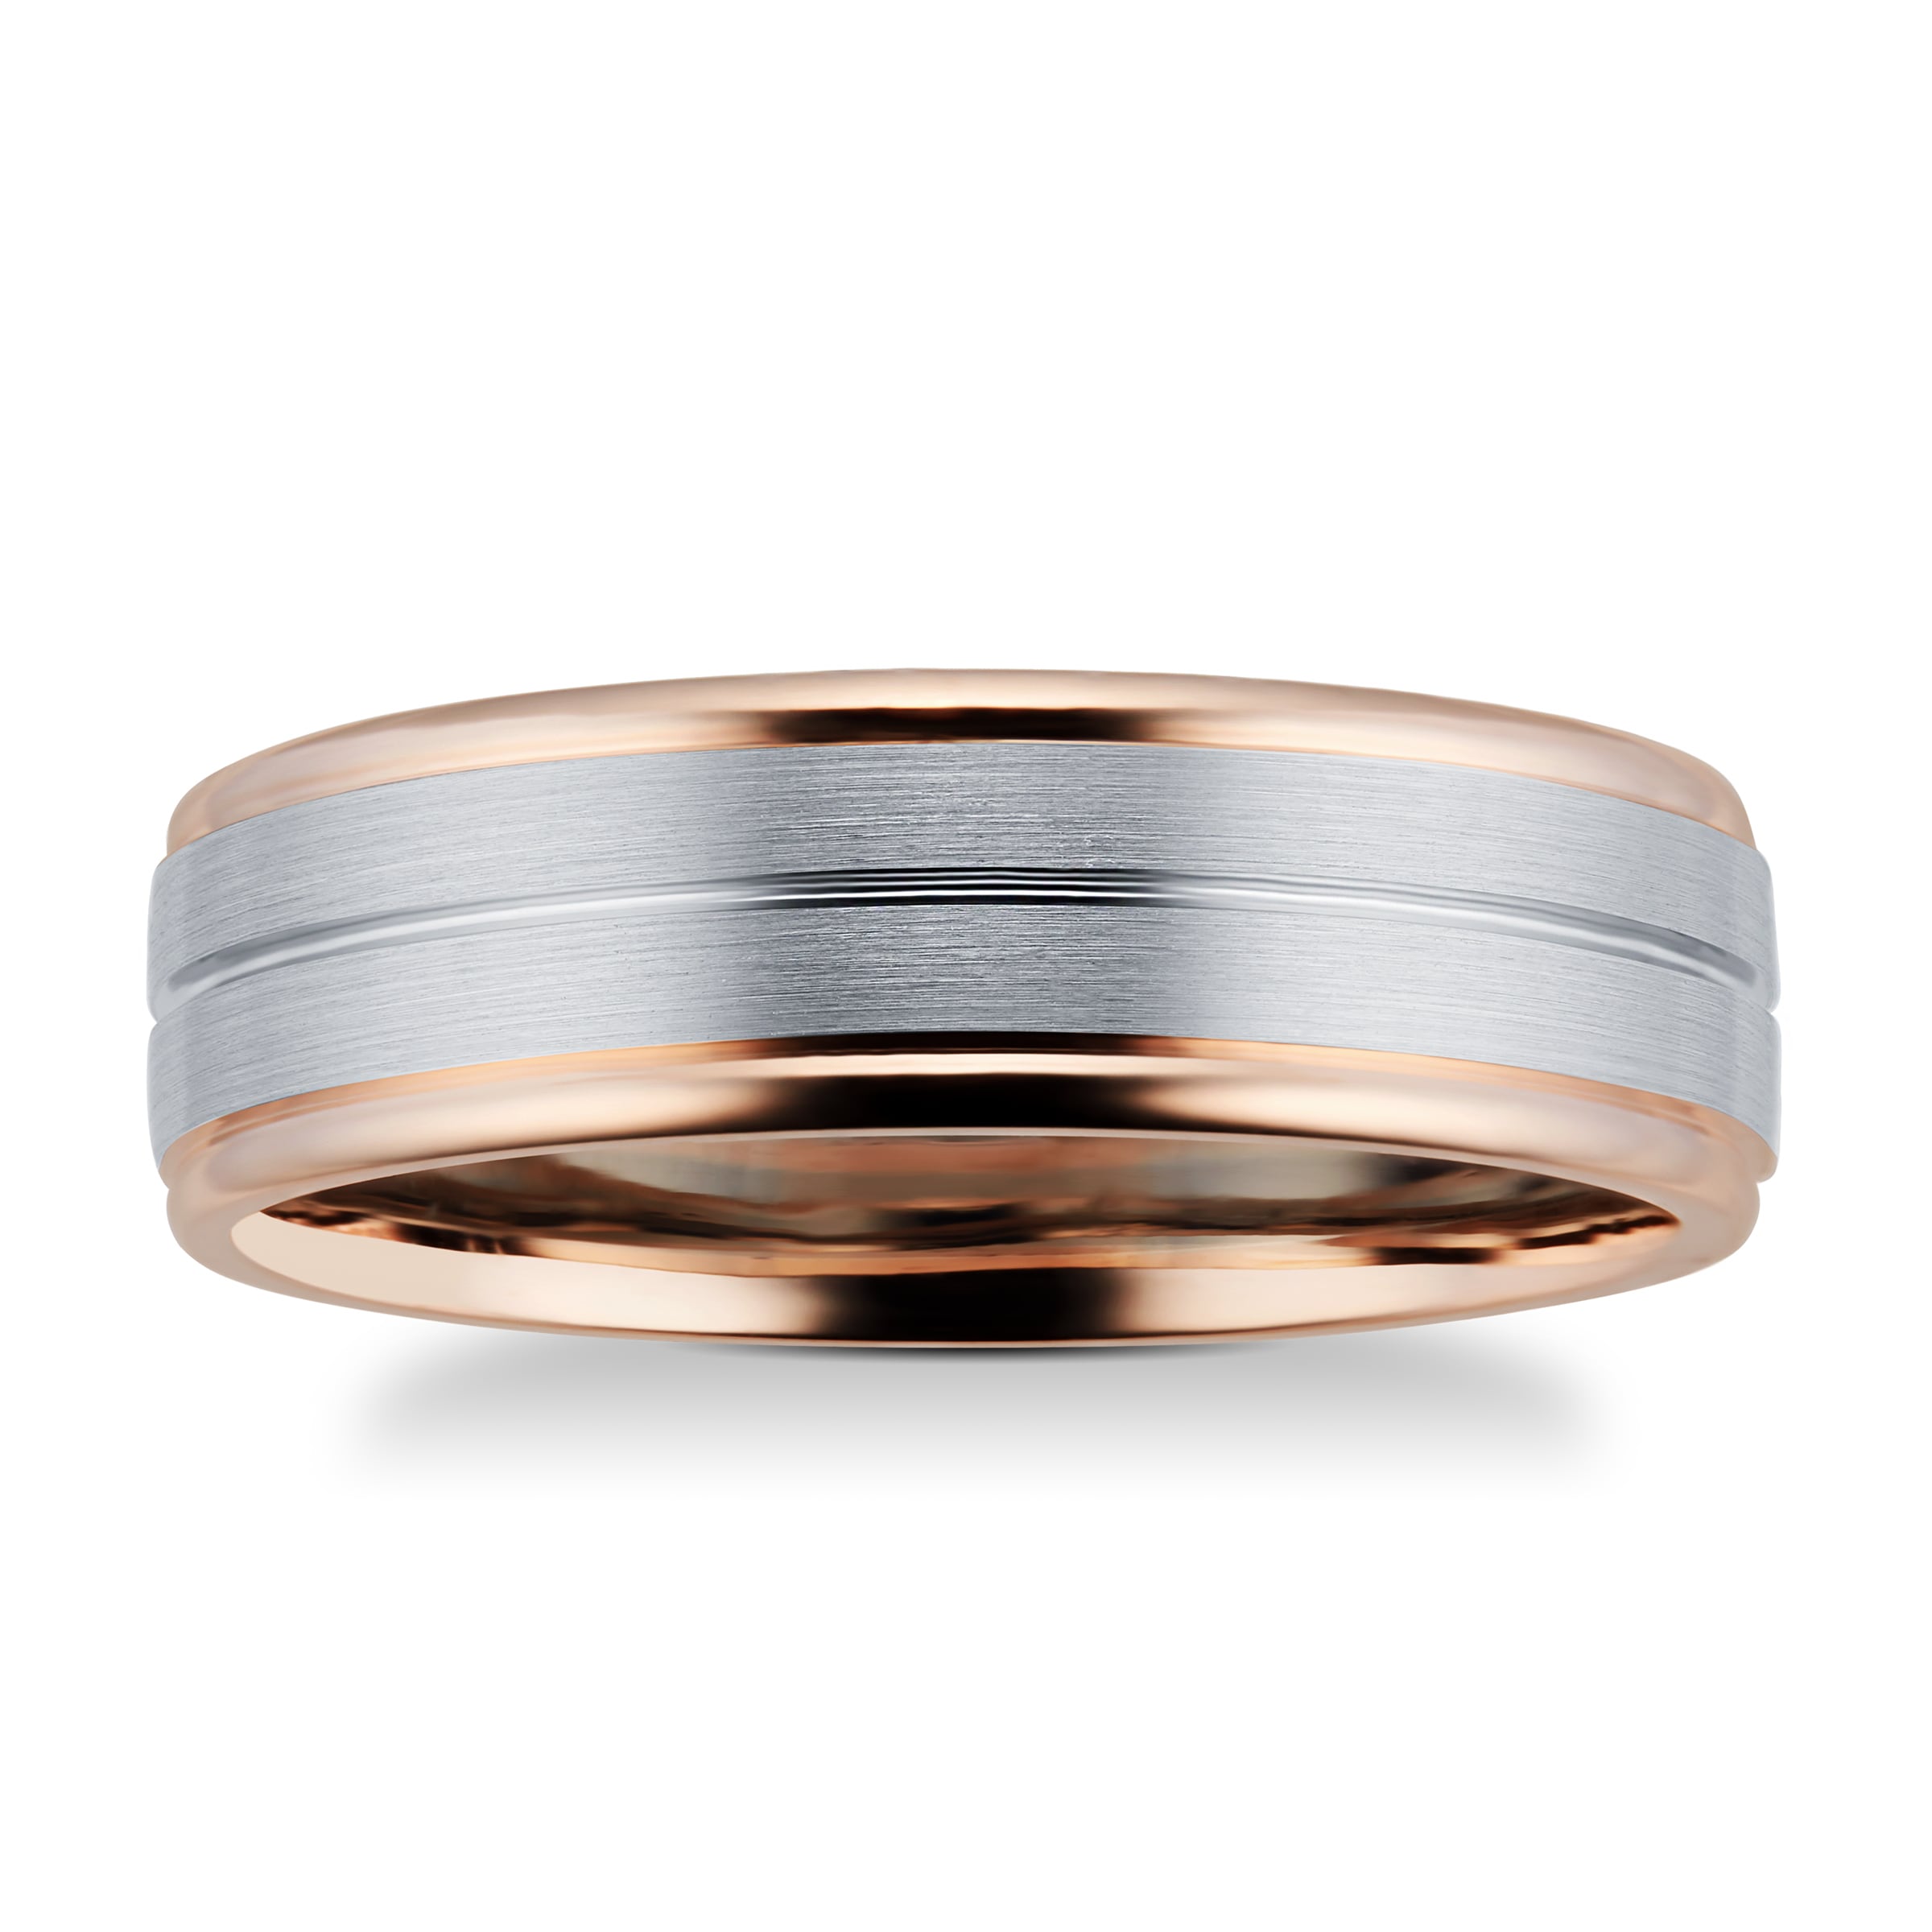 9ct Rose Gold & Palladium Wedding Ring - Ring Size T